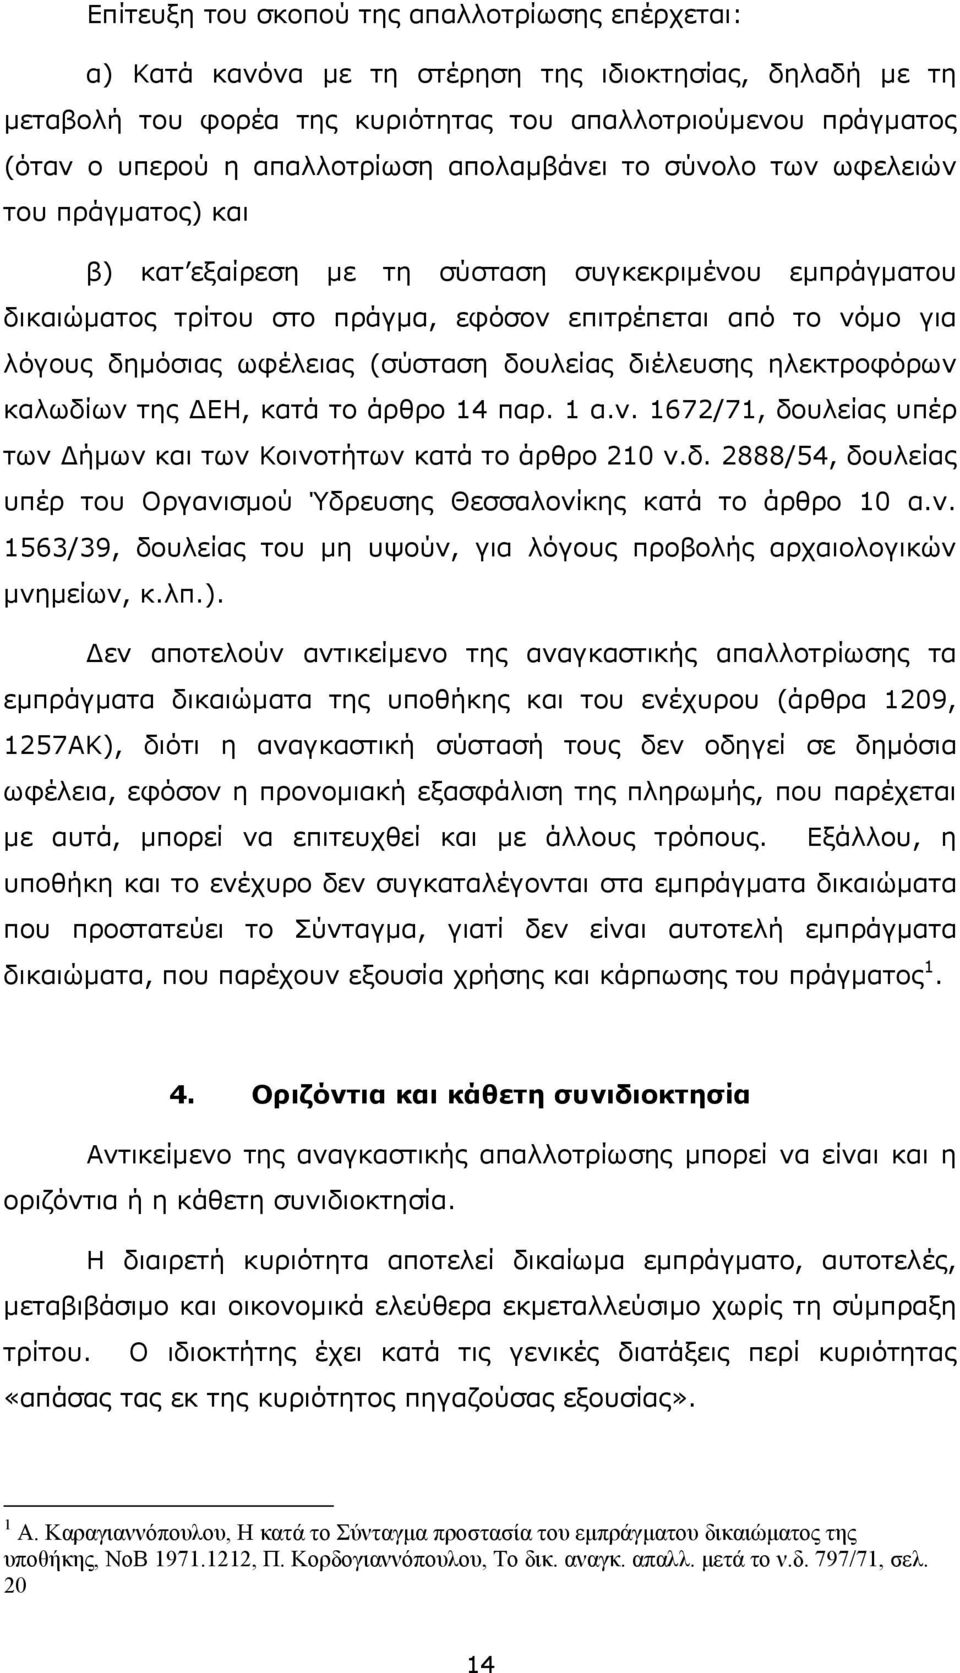 δηµόσιας ωφέλειας (σύσταση δουλείας διέλευσης ηλεκτροφόρων καλωδίων της ΕΗ, κατά το άρθρο 14 παρ. 1 α.ν. 1672/71, δουλείας υπέρ των ήµων και των Κοινοτήτων κατά το άρθρο 210 ν.δ. 2888/54, δουλείας υπέρ του Οργανισµού Ύδρευσης Θεσσαλονίκης κατά το άρθρο 10 α.